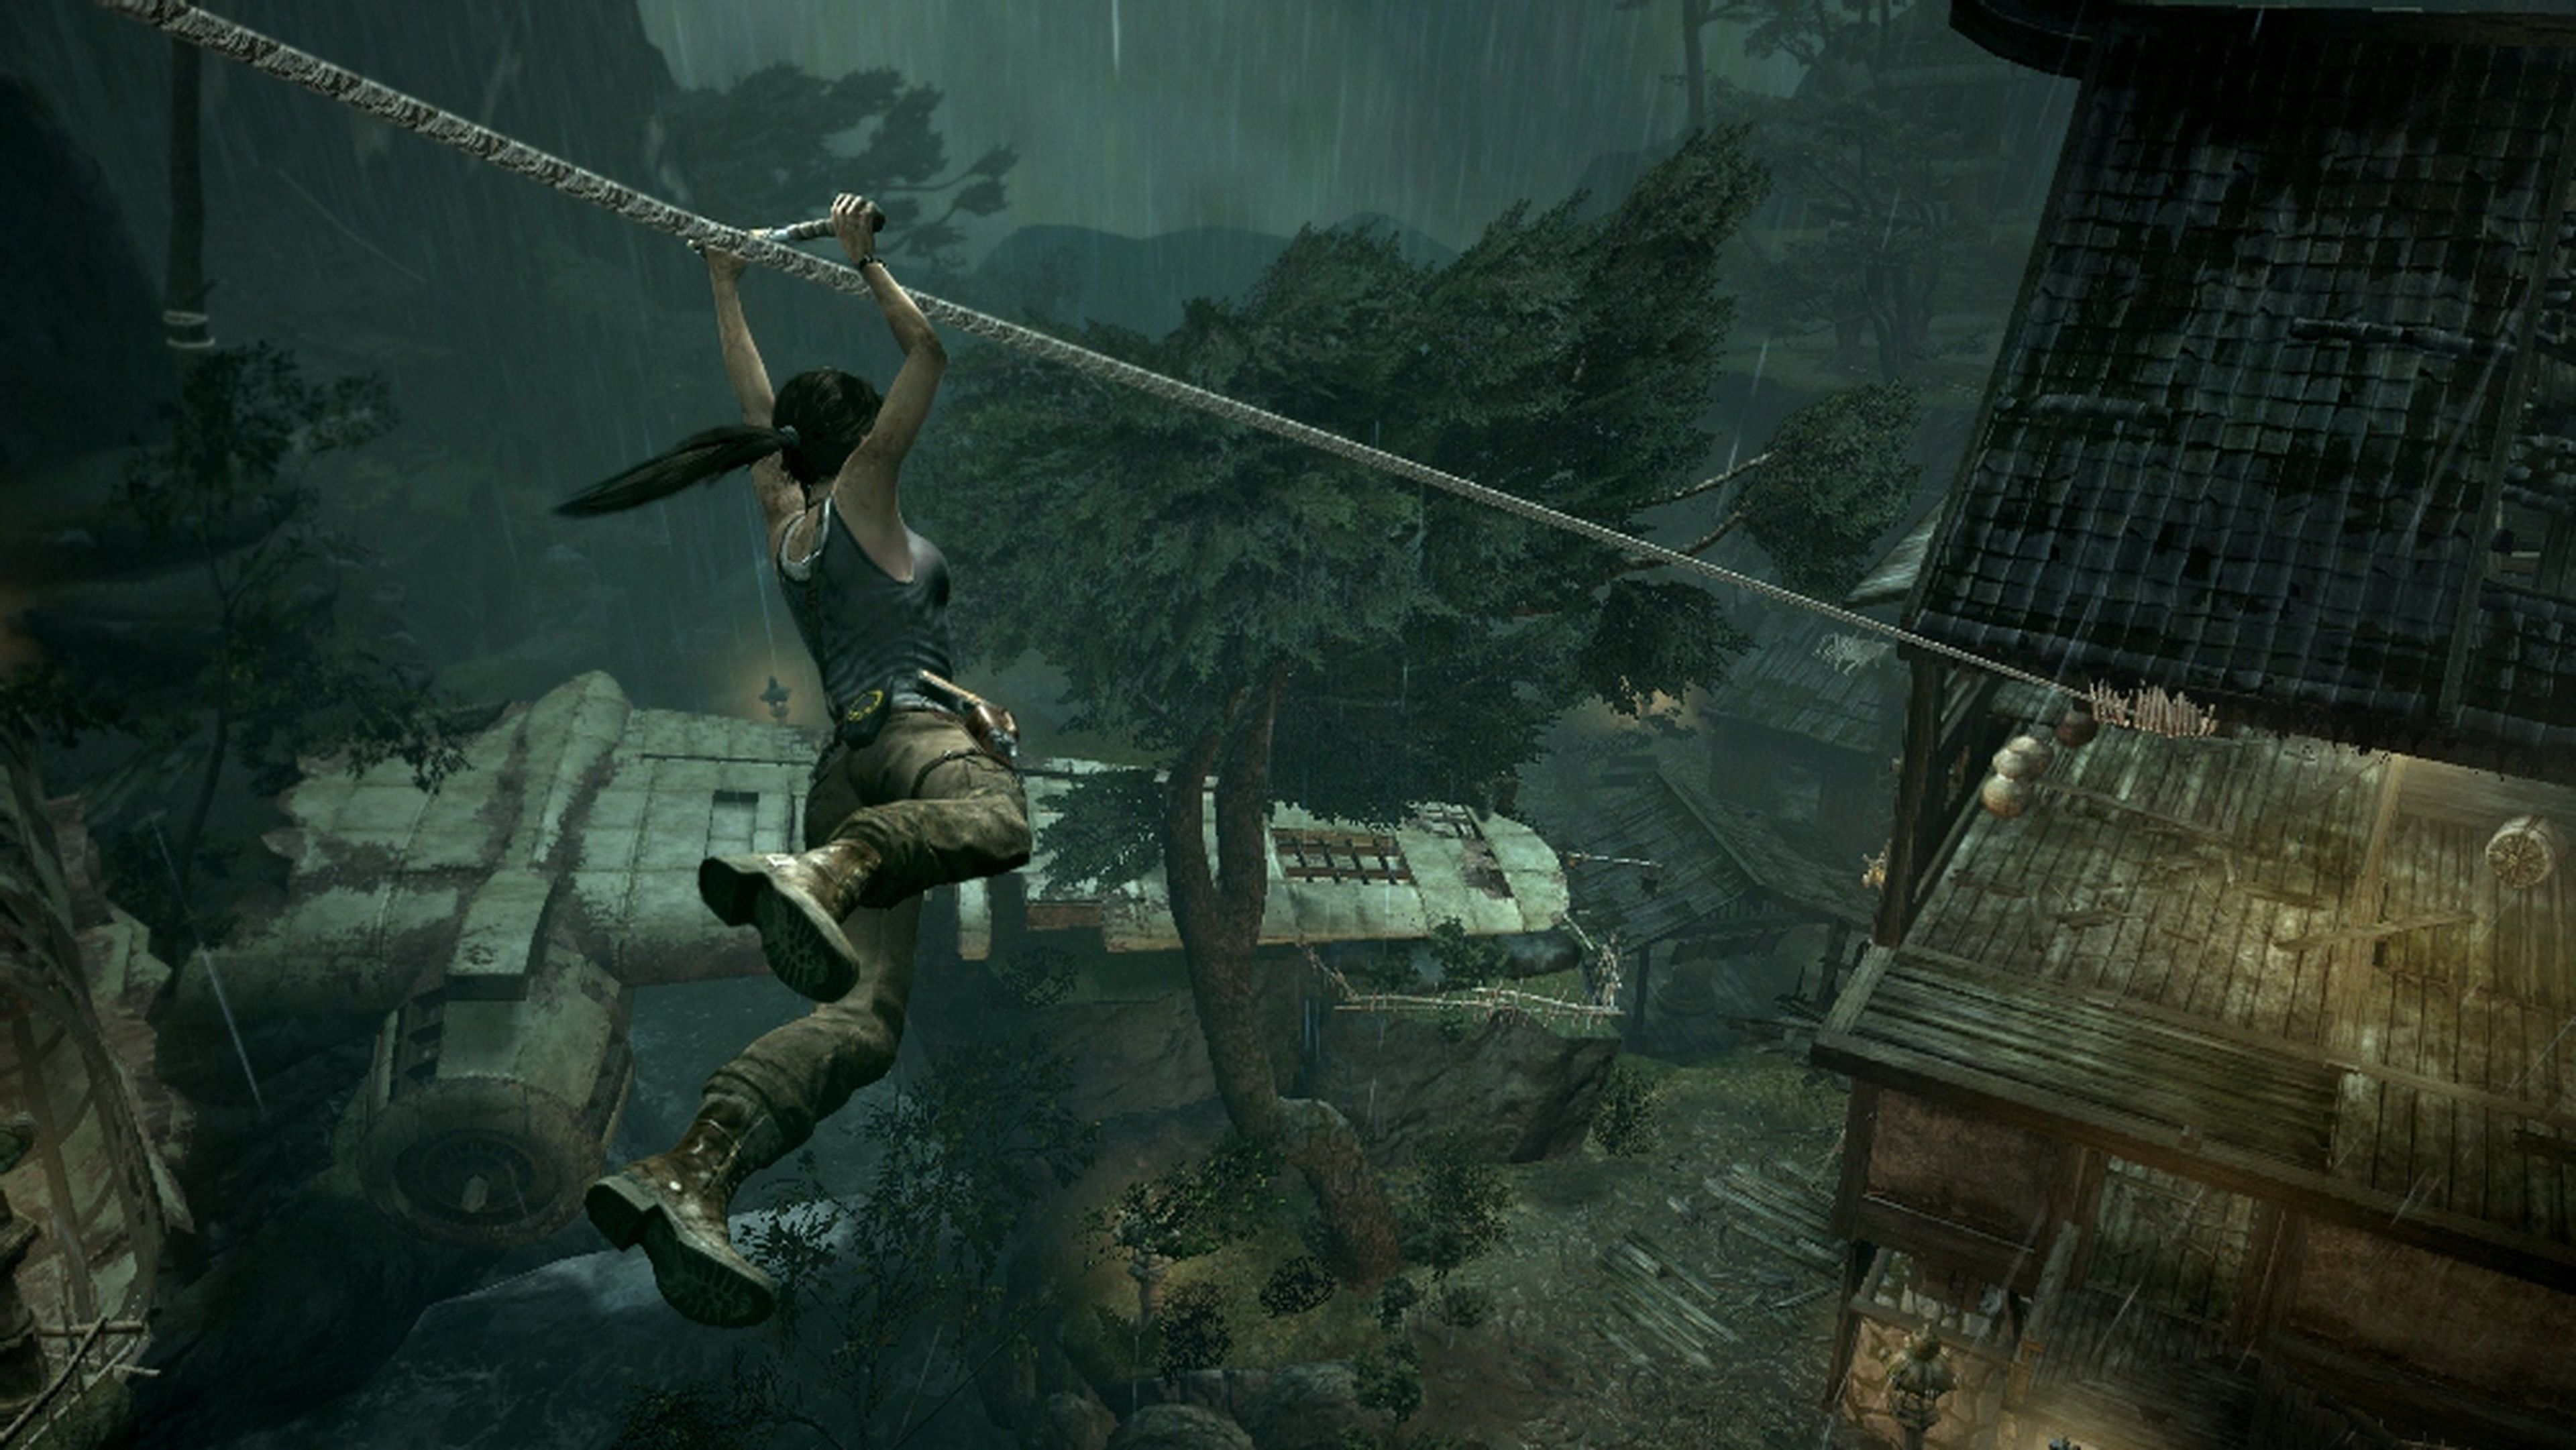 Los juegos de 2013: Tomb Raider